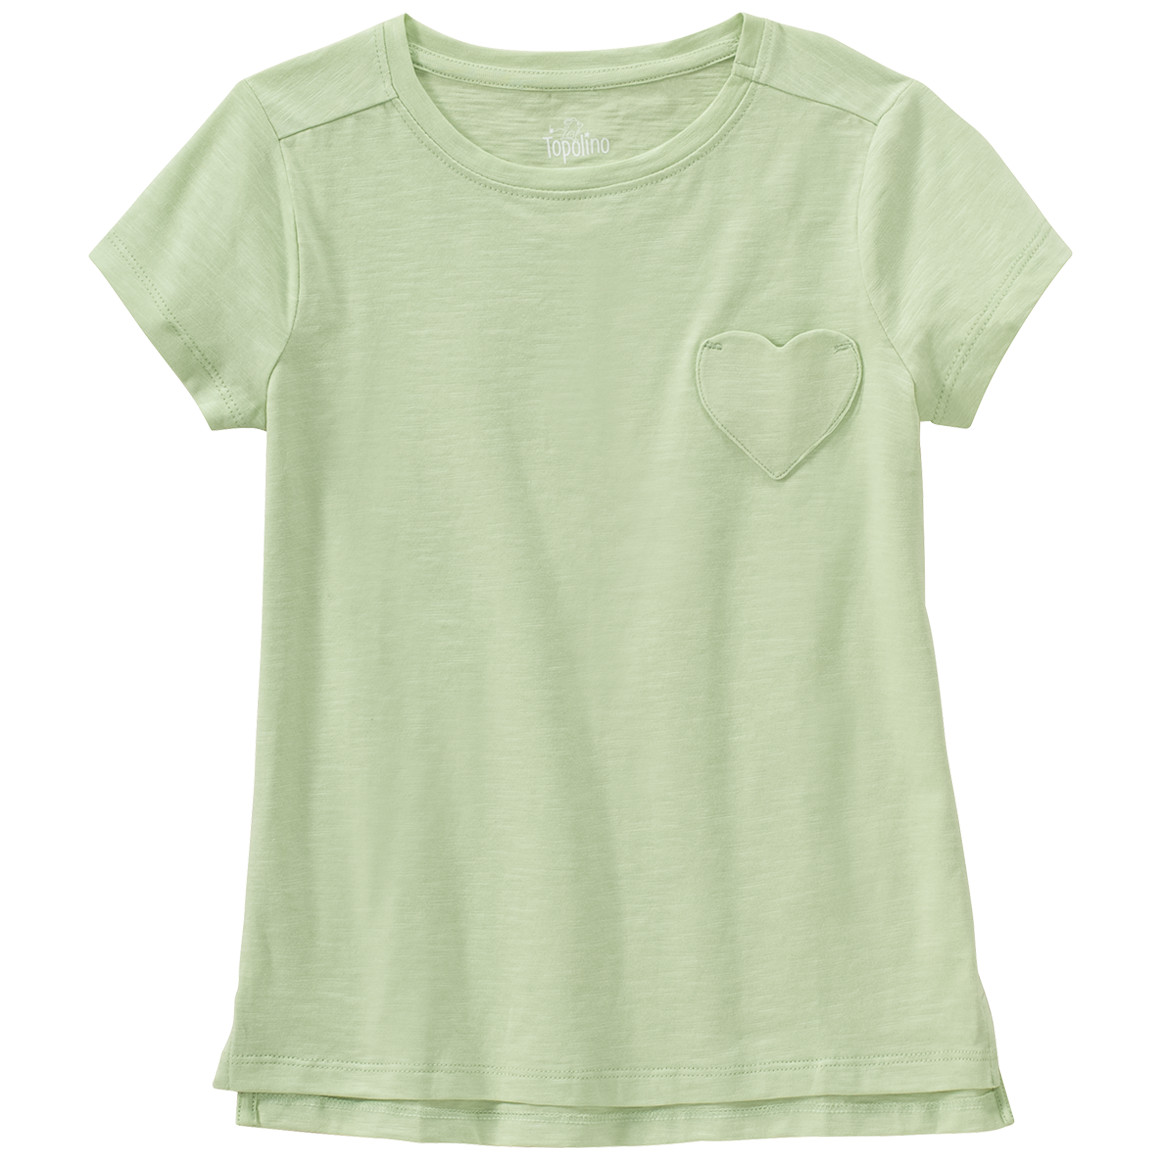 Mädchen T-Shirt mit Herztasche von Topolino